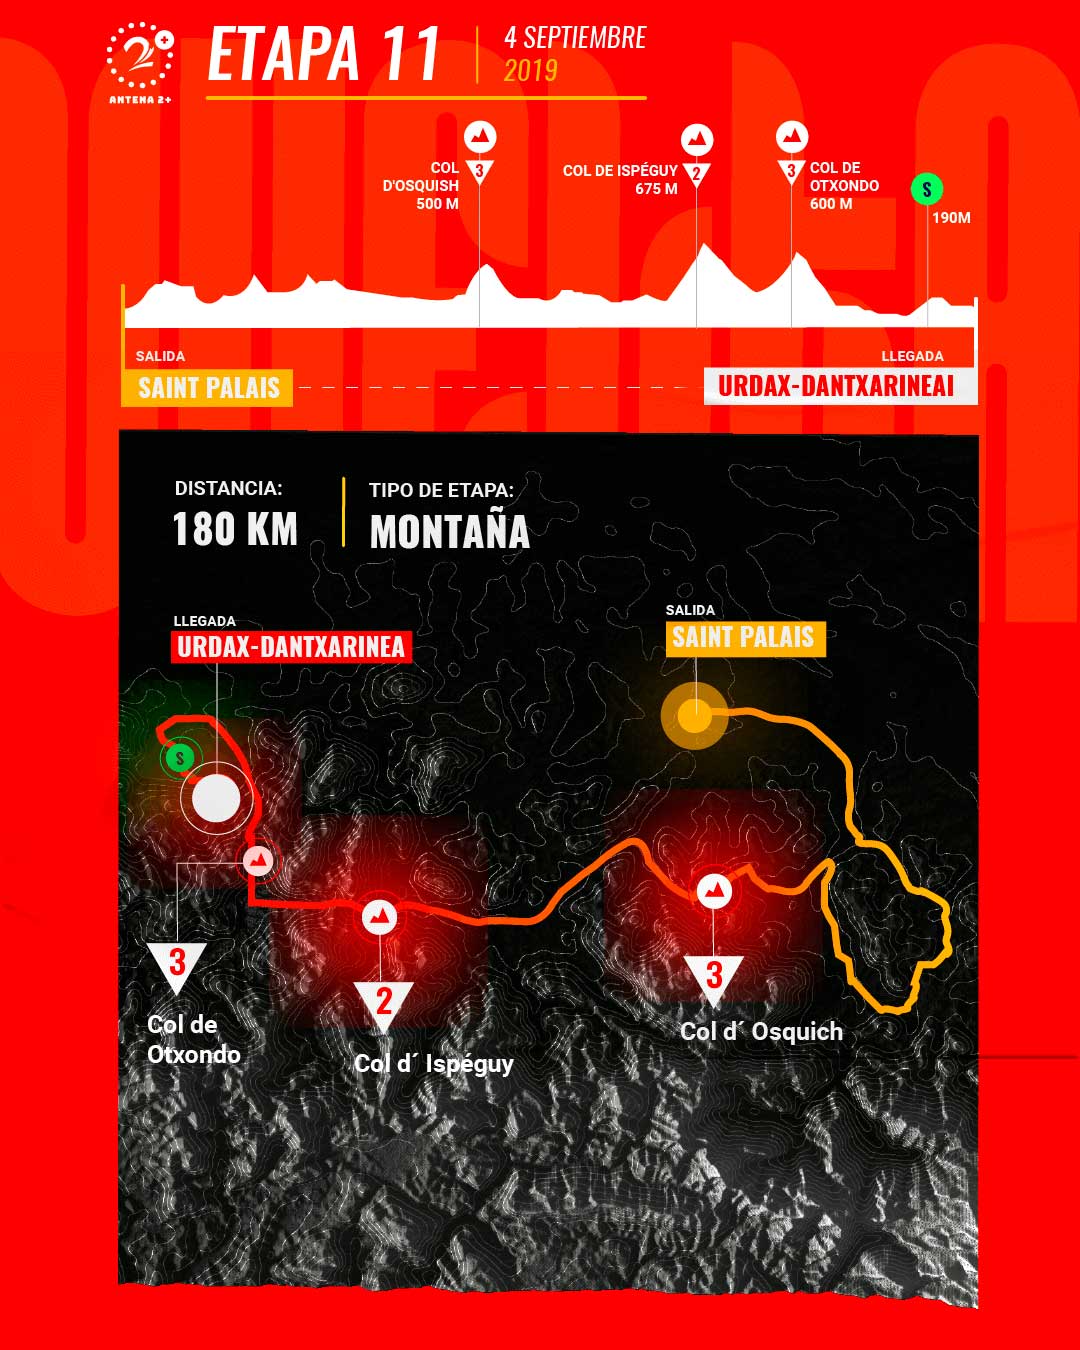 Etapa 11, Vuelta a España 2019 